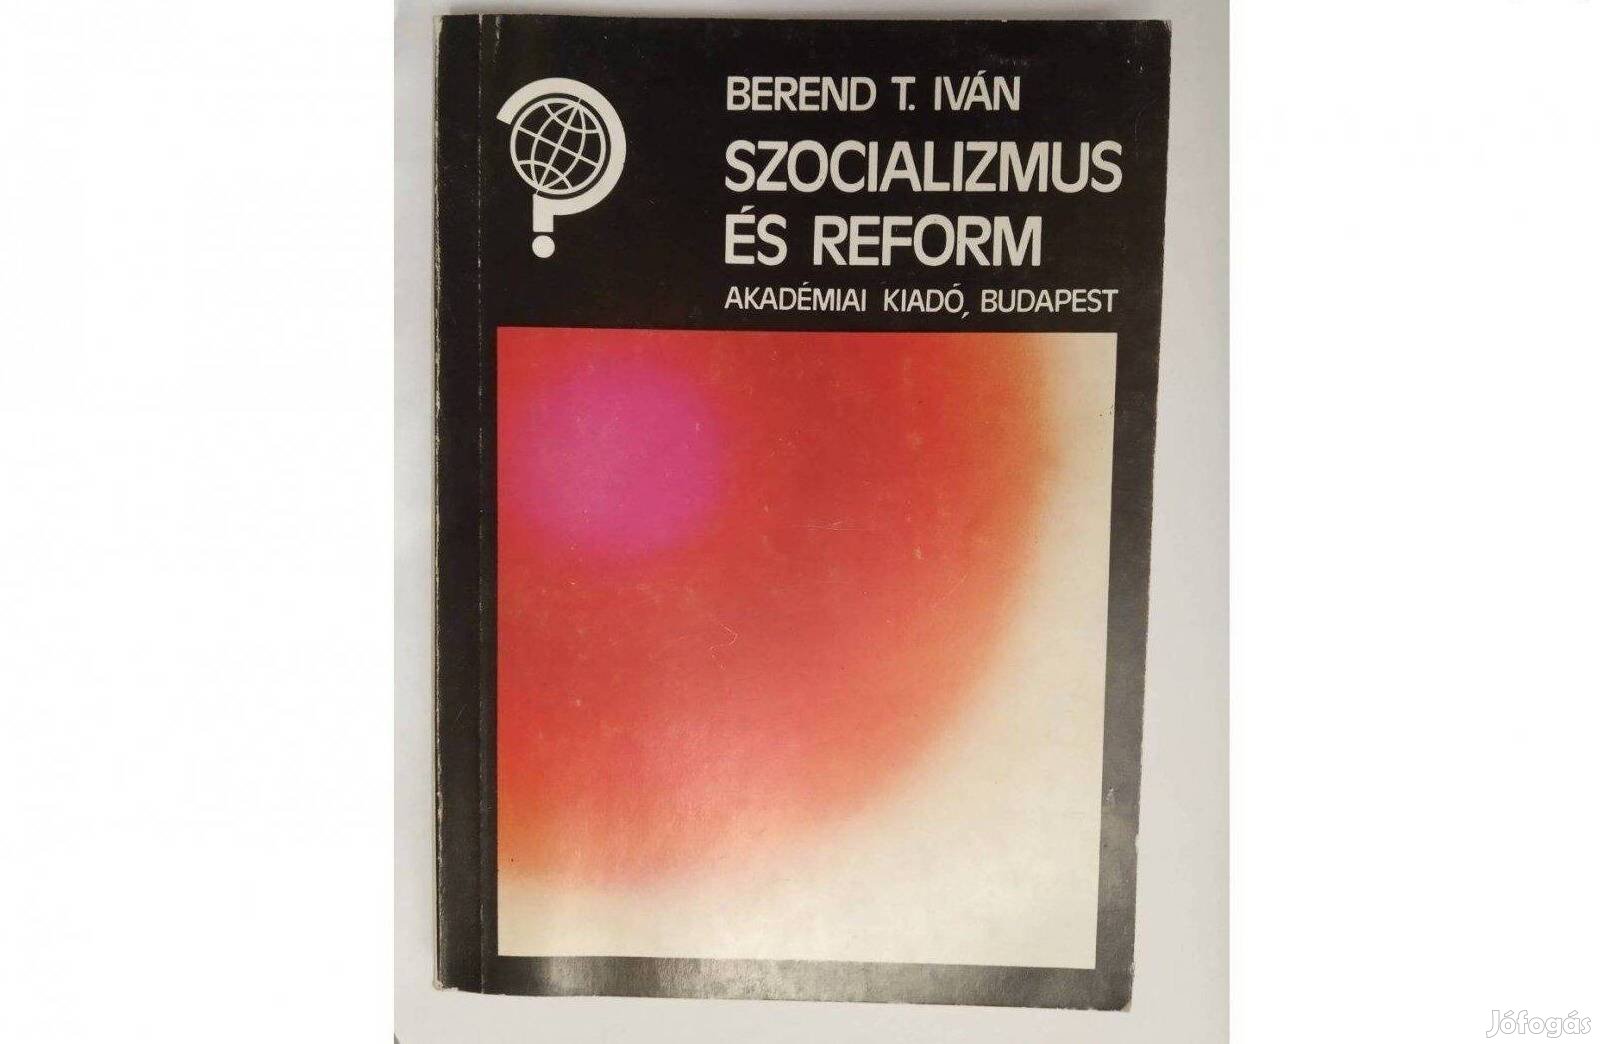 Berend T. Iván - Szocializmus és reform Kiadó: Akadémiai Kiadó